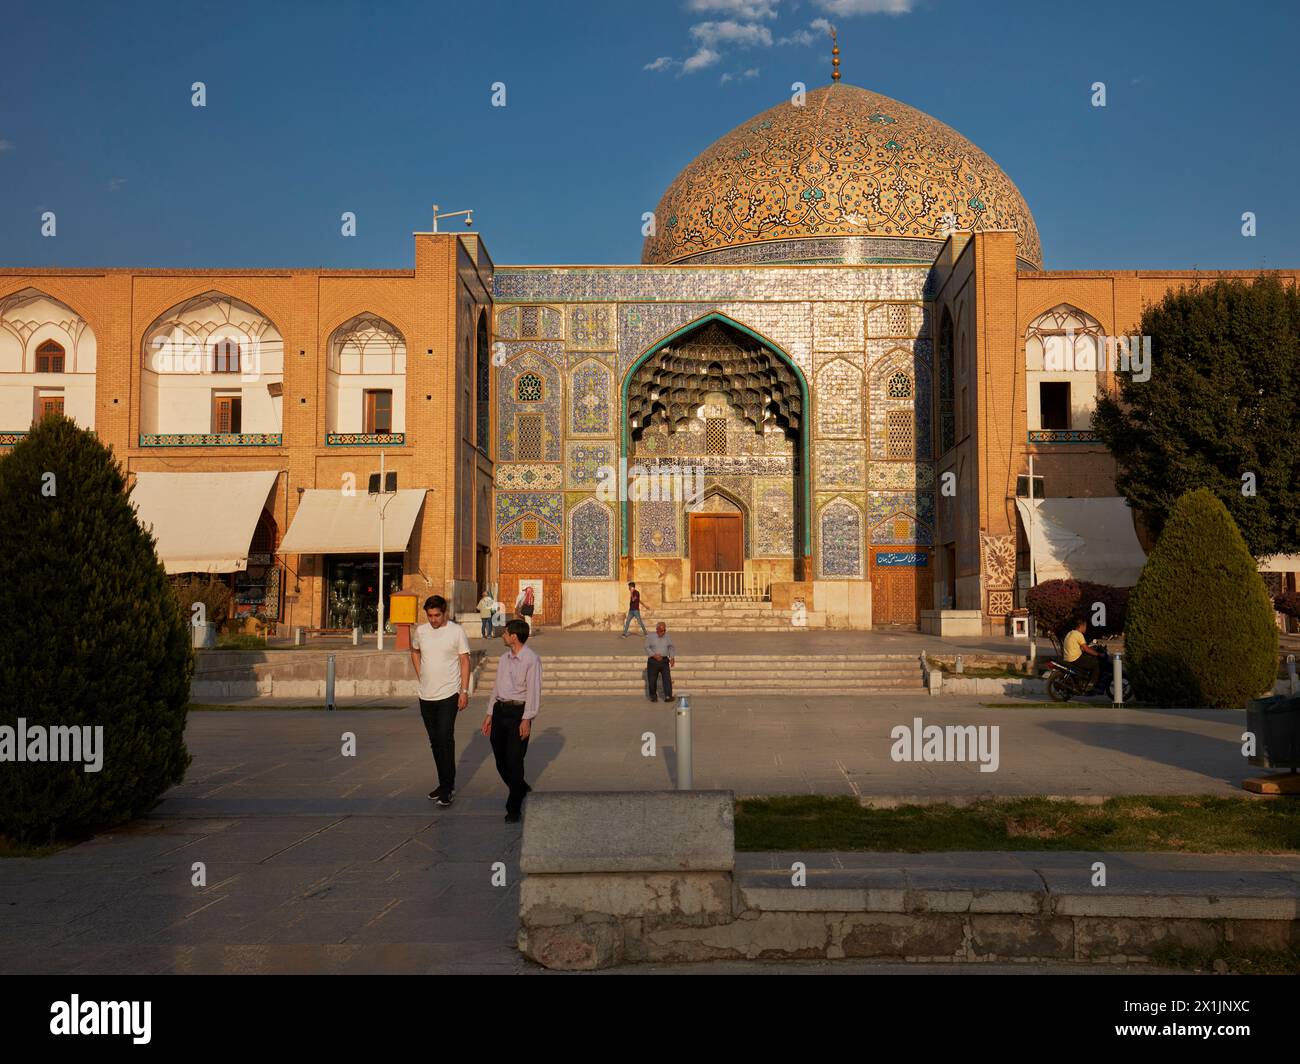 People walk at the Lotfollah Mosque in Naqsh-e Jahan Square. Isfahan, Iran. Stock Photo